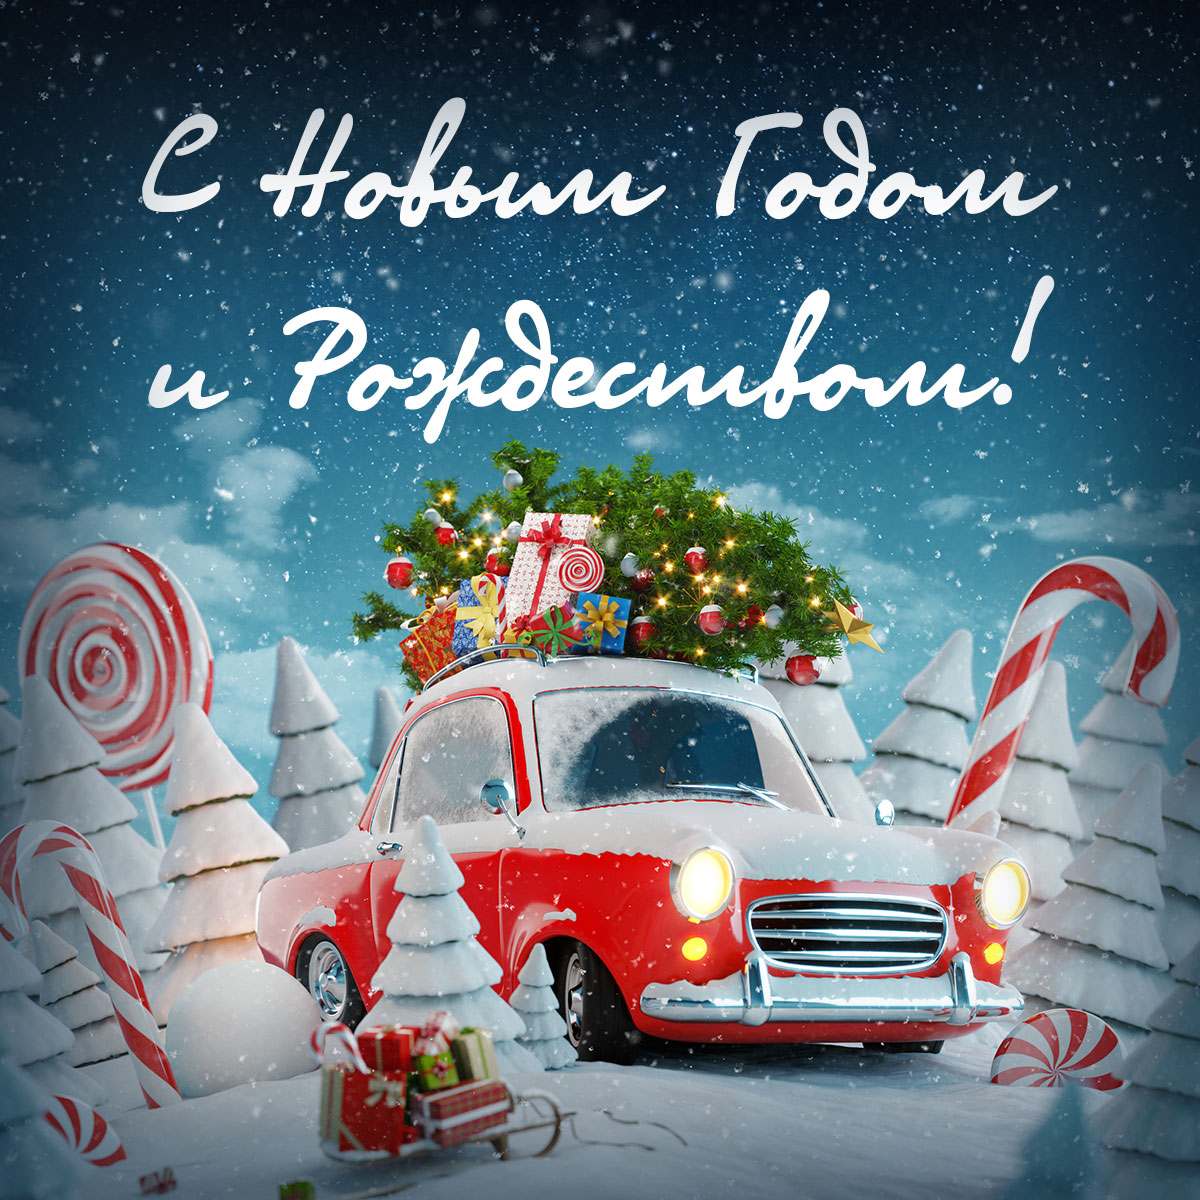 Синяя открытка с новым годом и рождеством с красной машиной Санта Клауса и карамельными тростями в снегу.